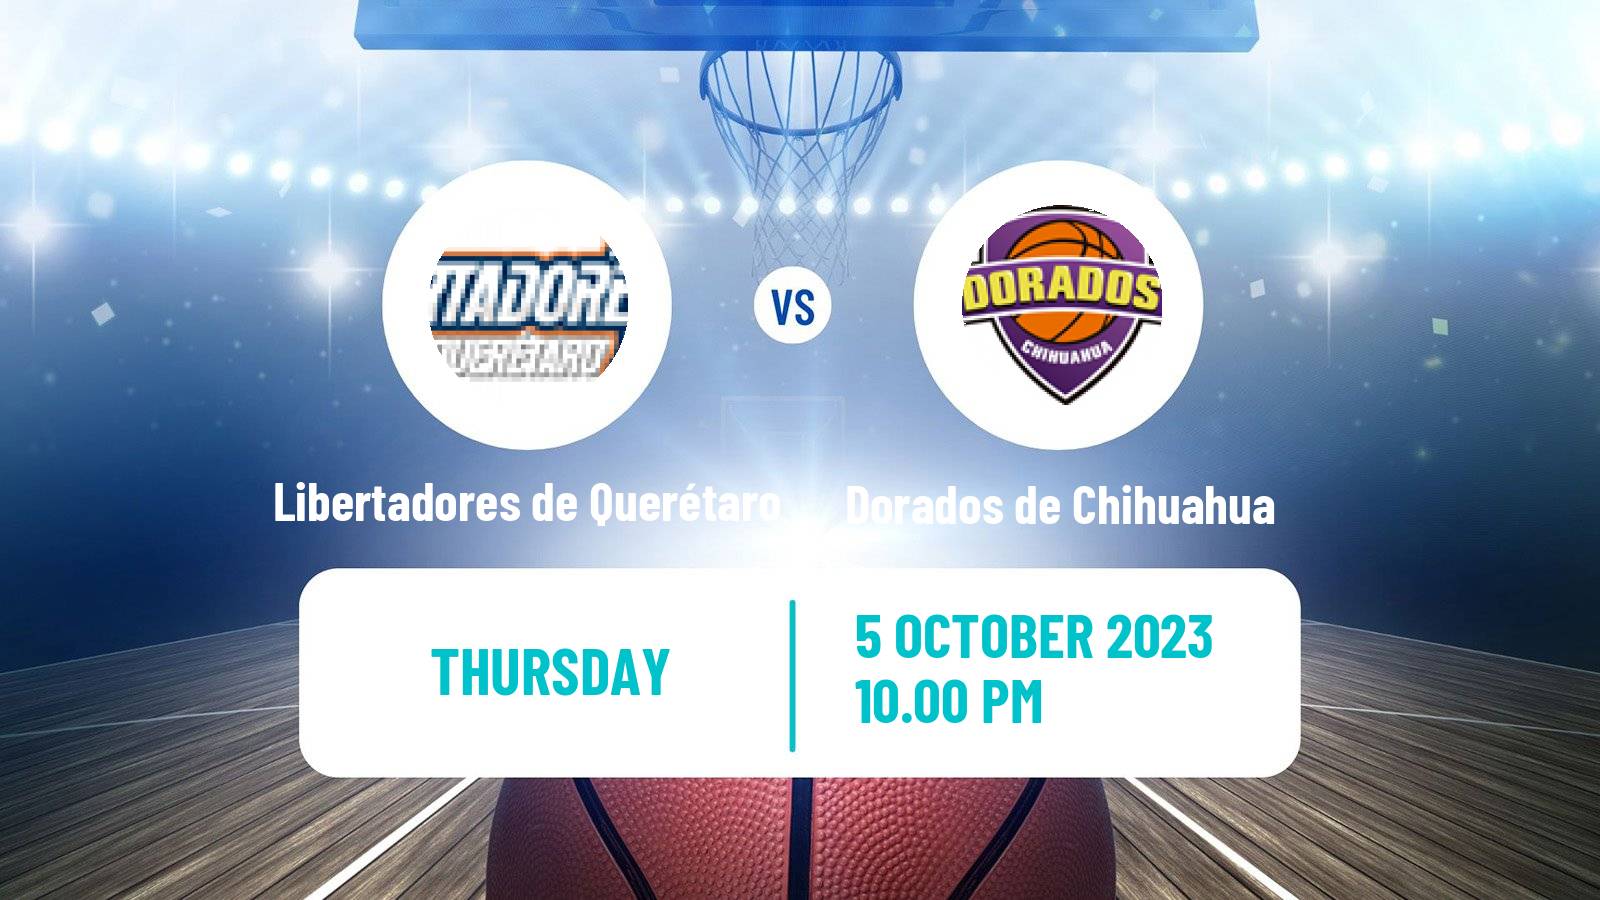 Basketball Mexican LNBP Libertadores de Querétaro - Dorados de Chihuahua